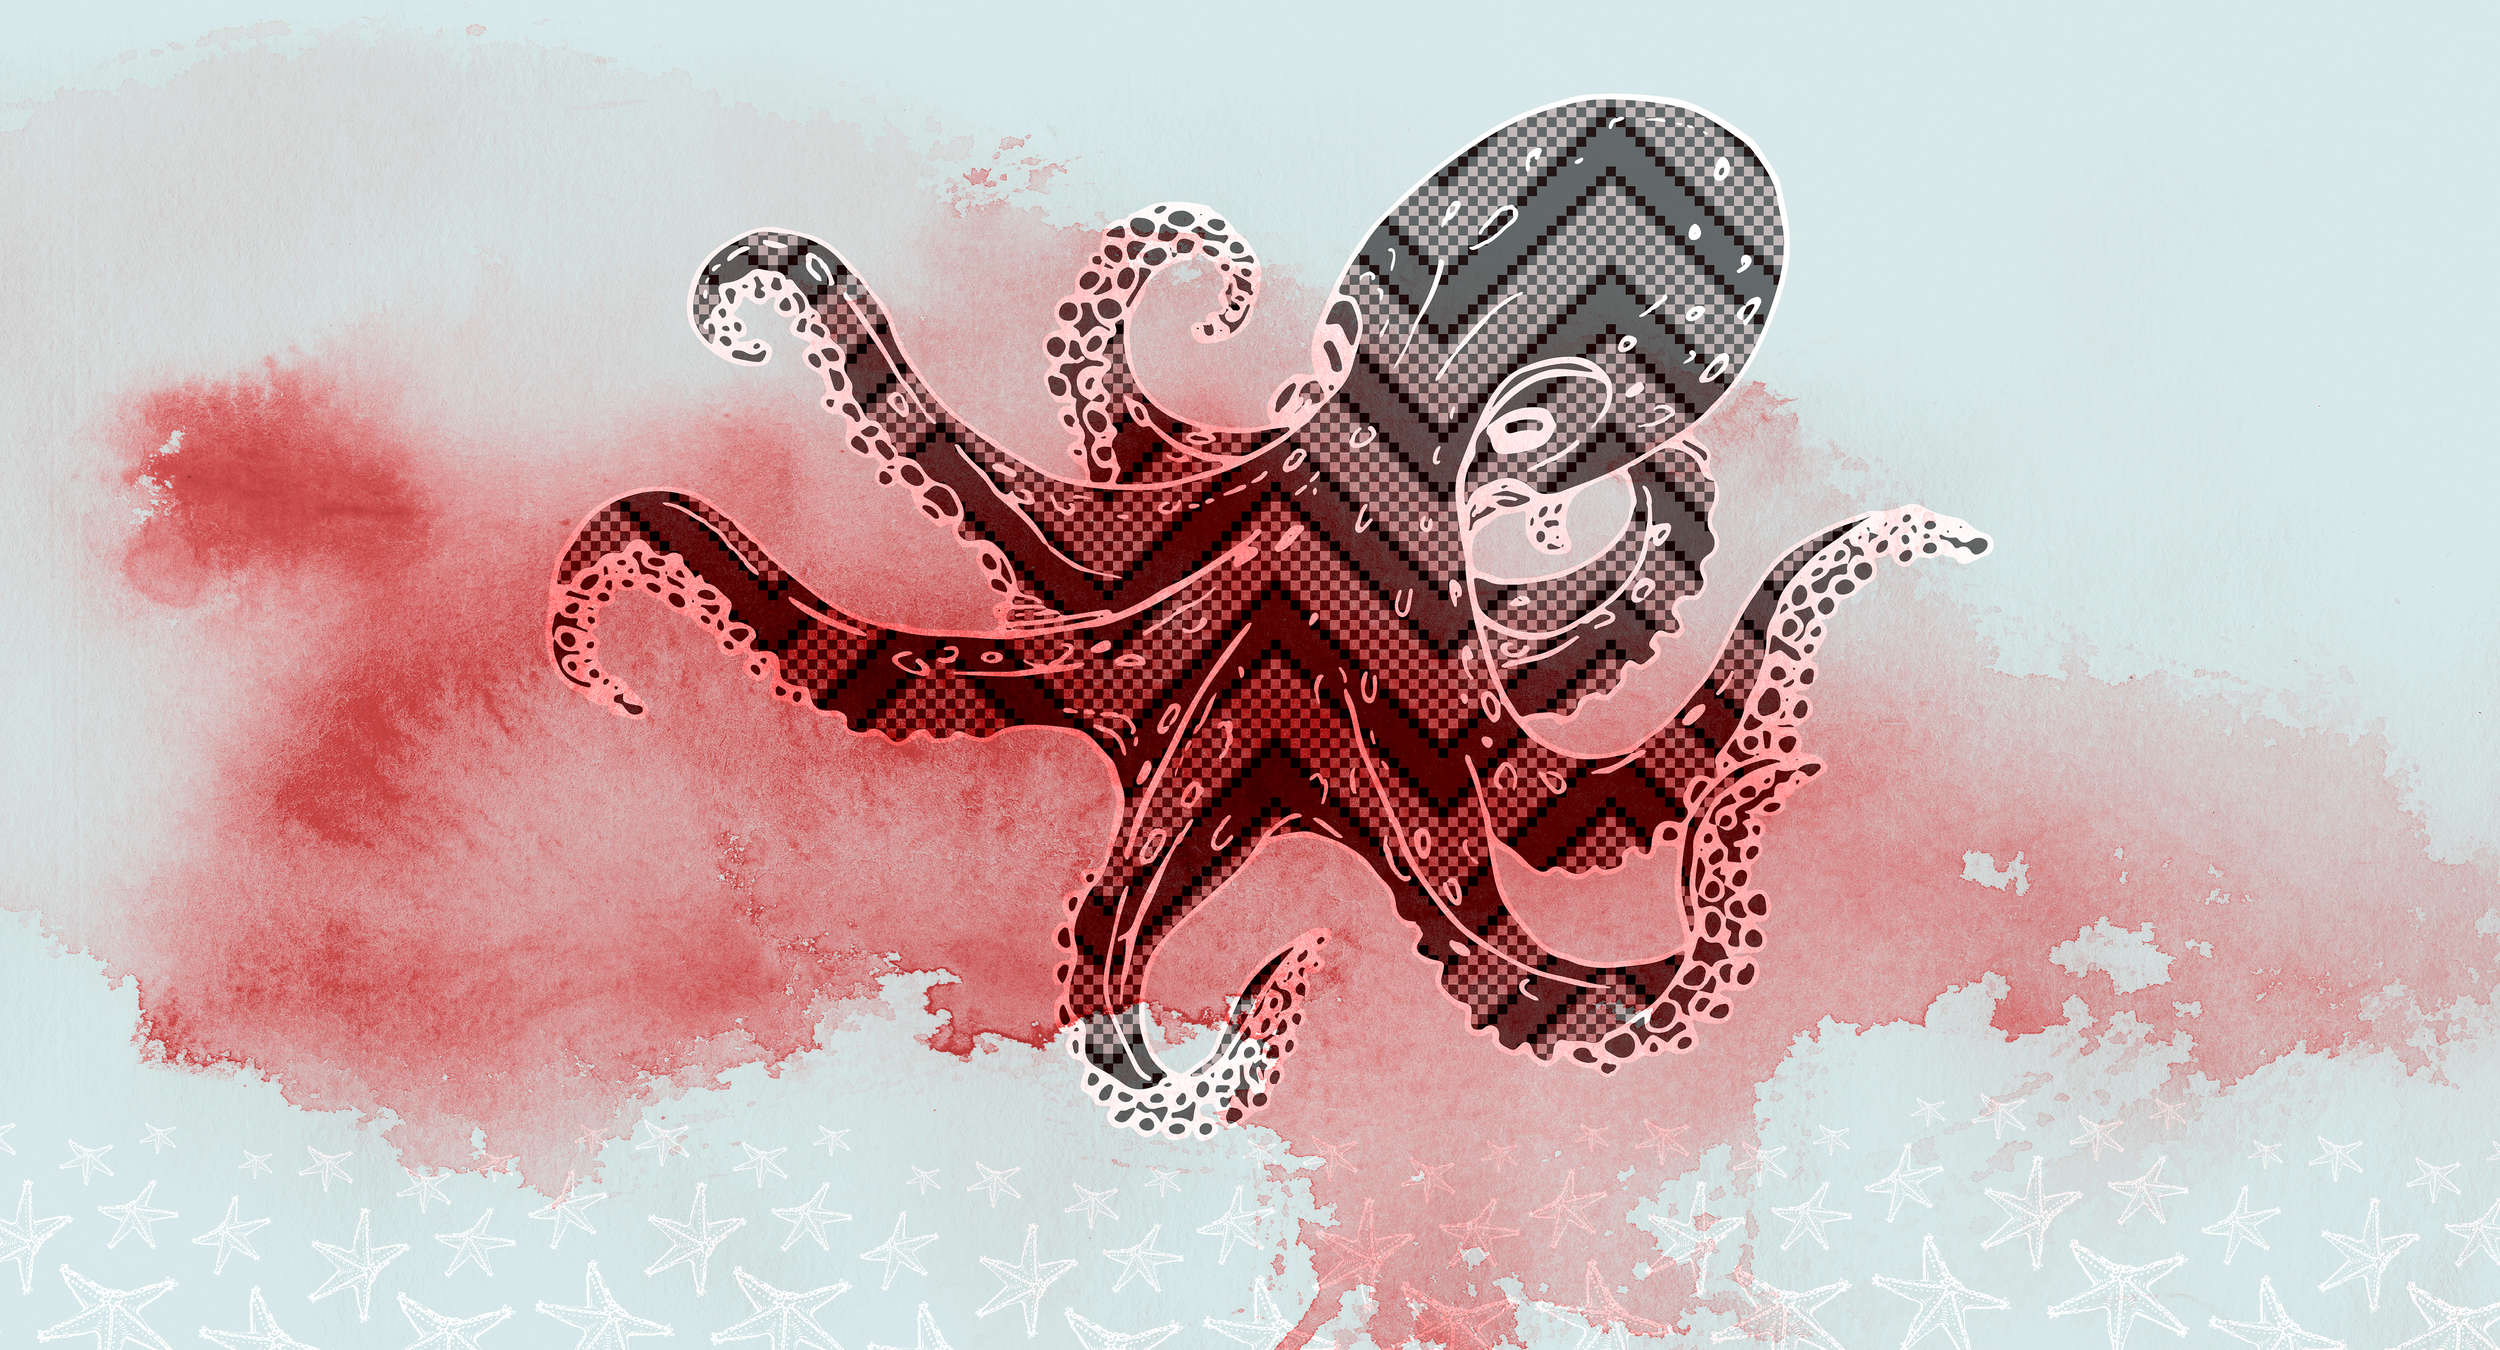             Octopus Muurschildering Grafisch Ontwerp & Zeesterren - Rood, Blauw, Wit
        